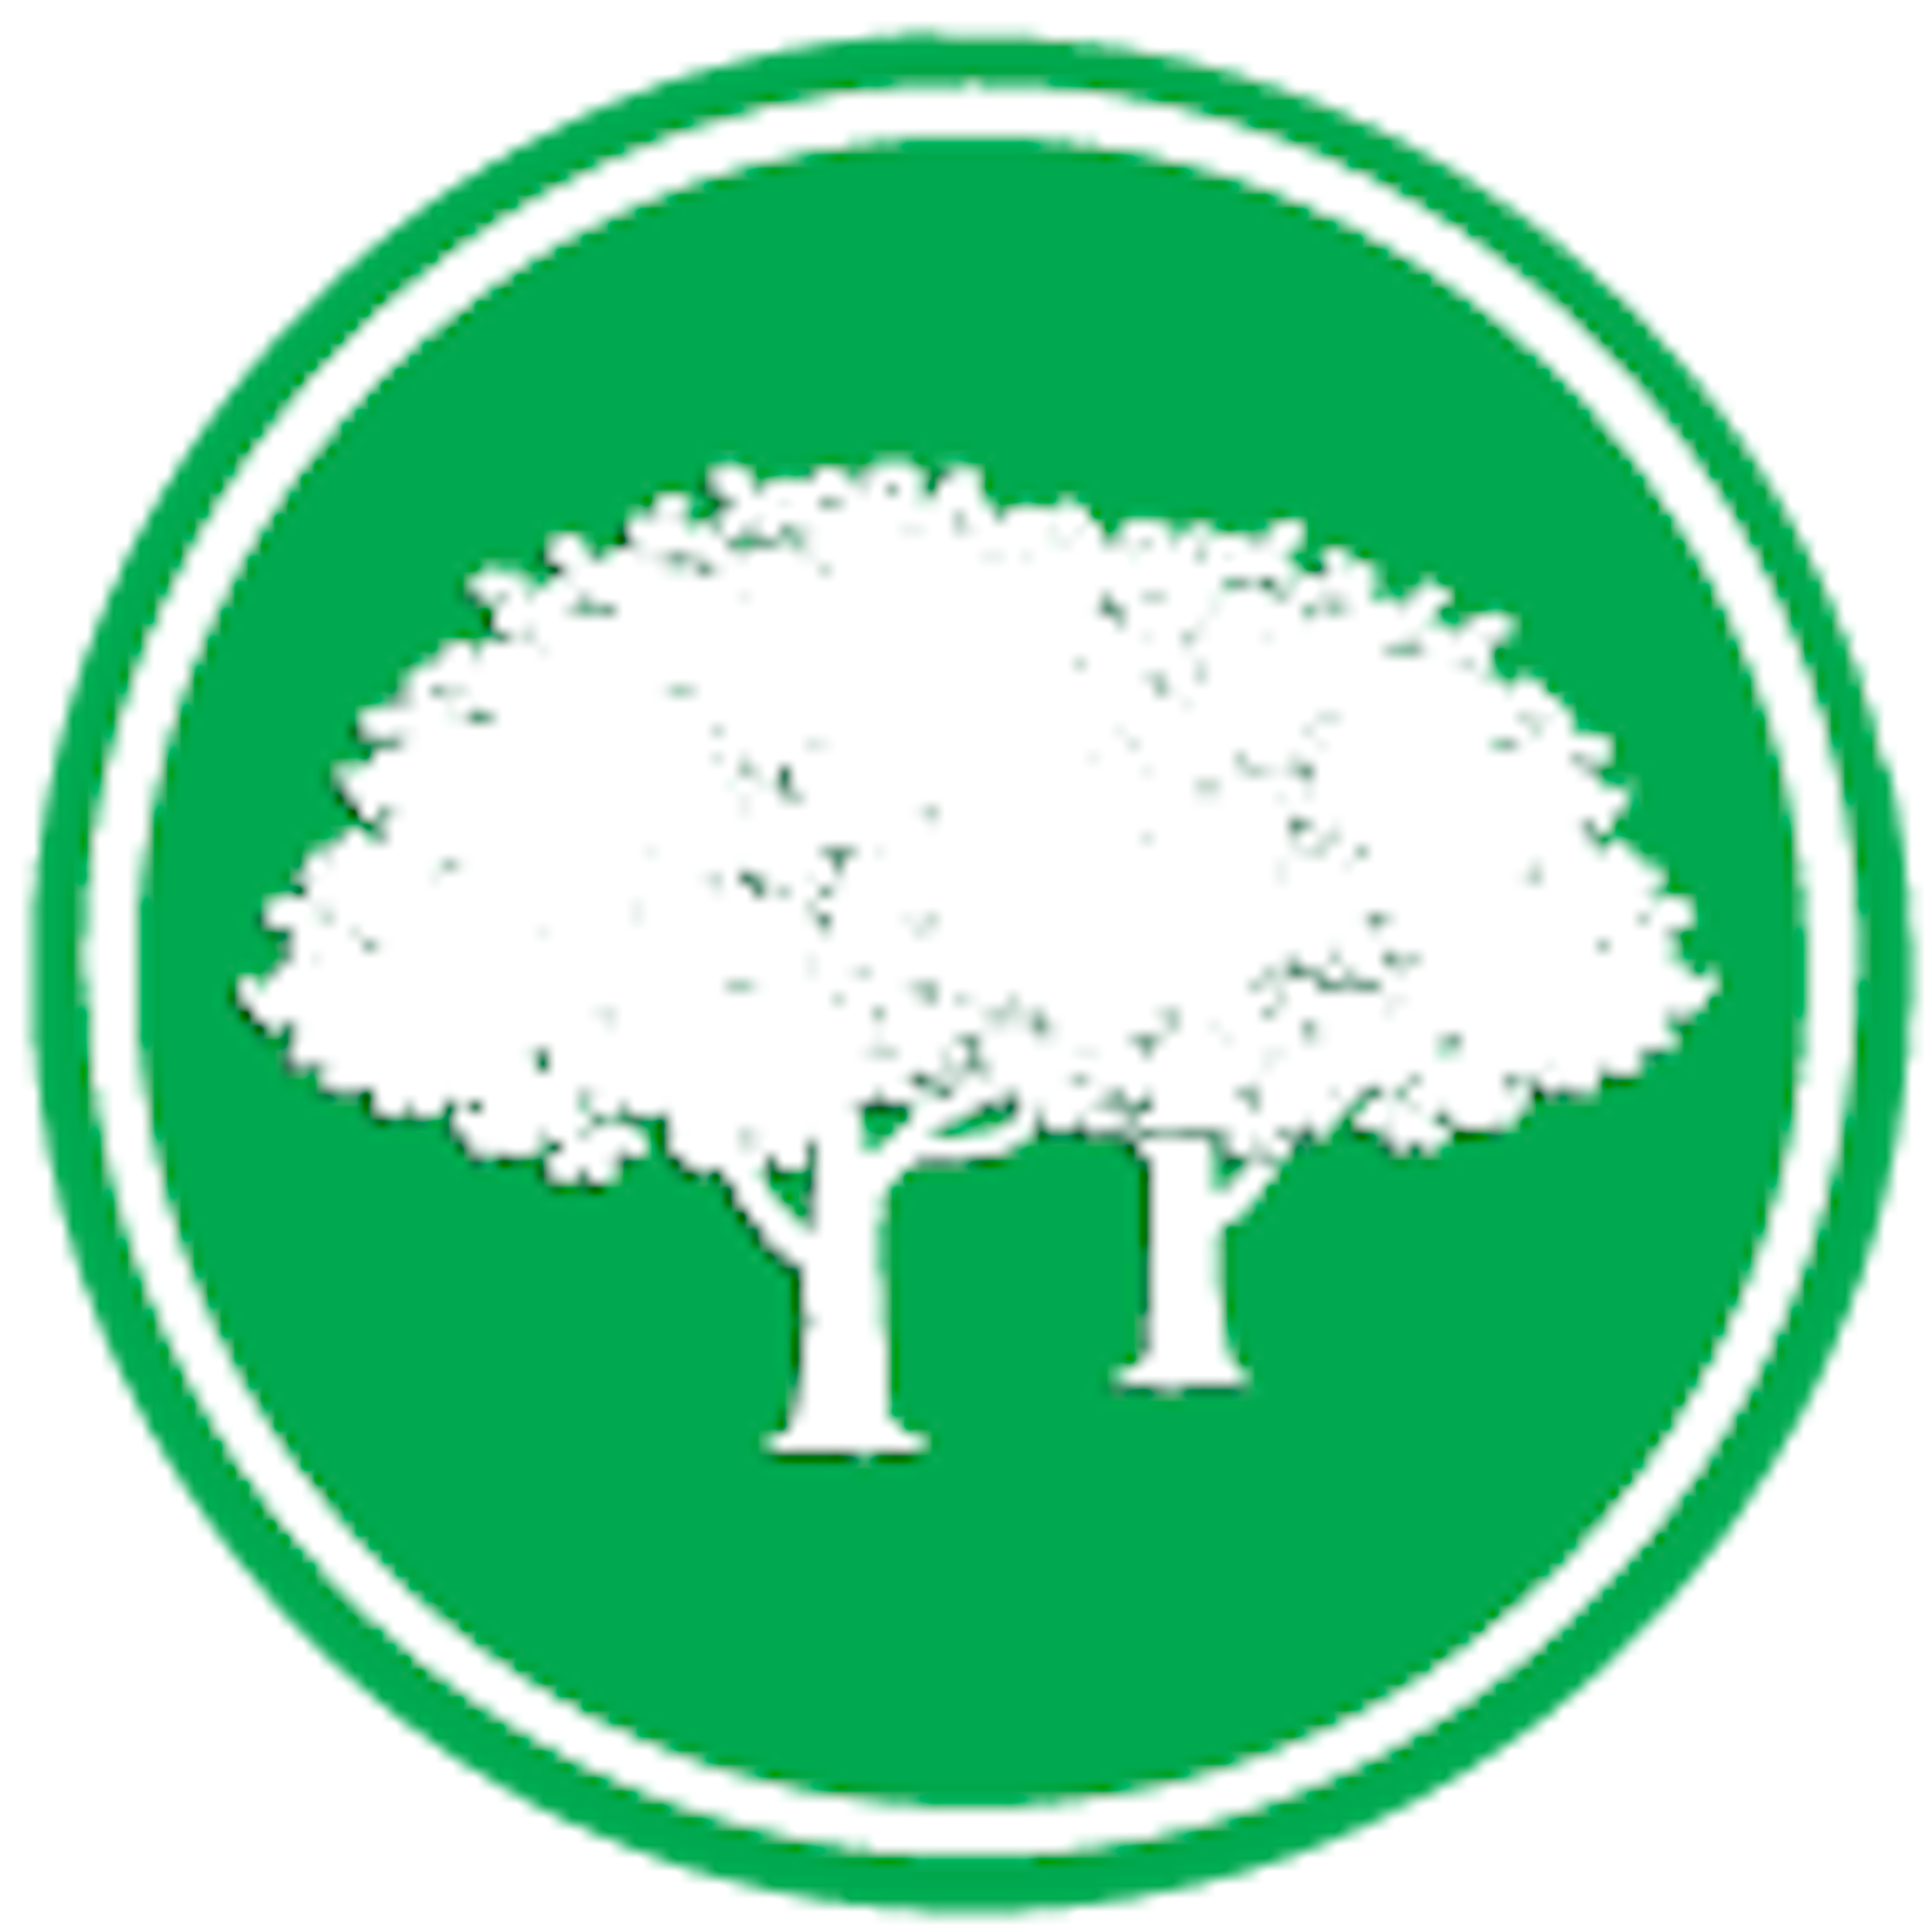 Twin Oaks Logo